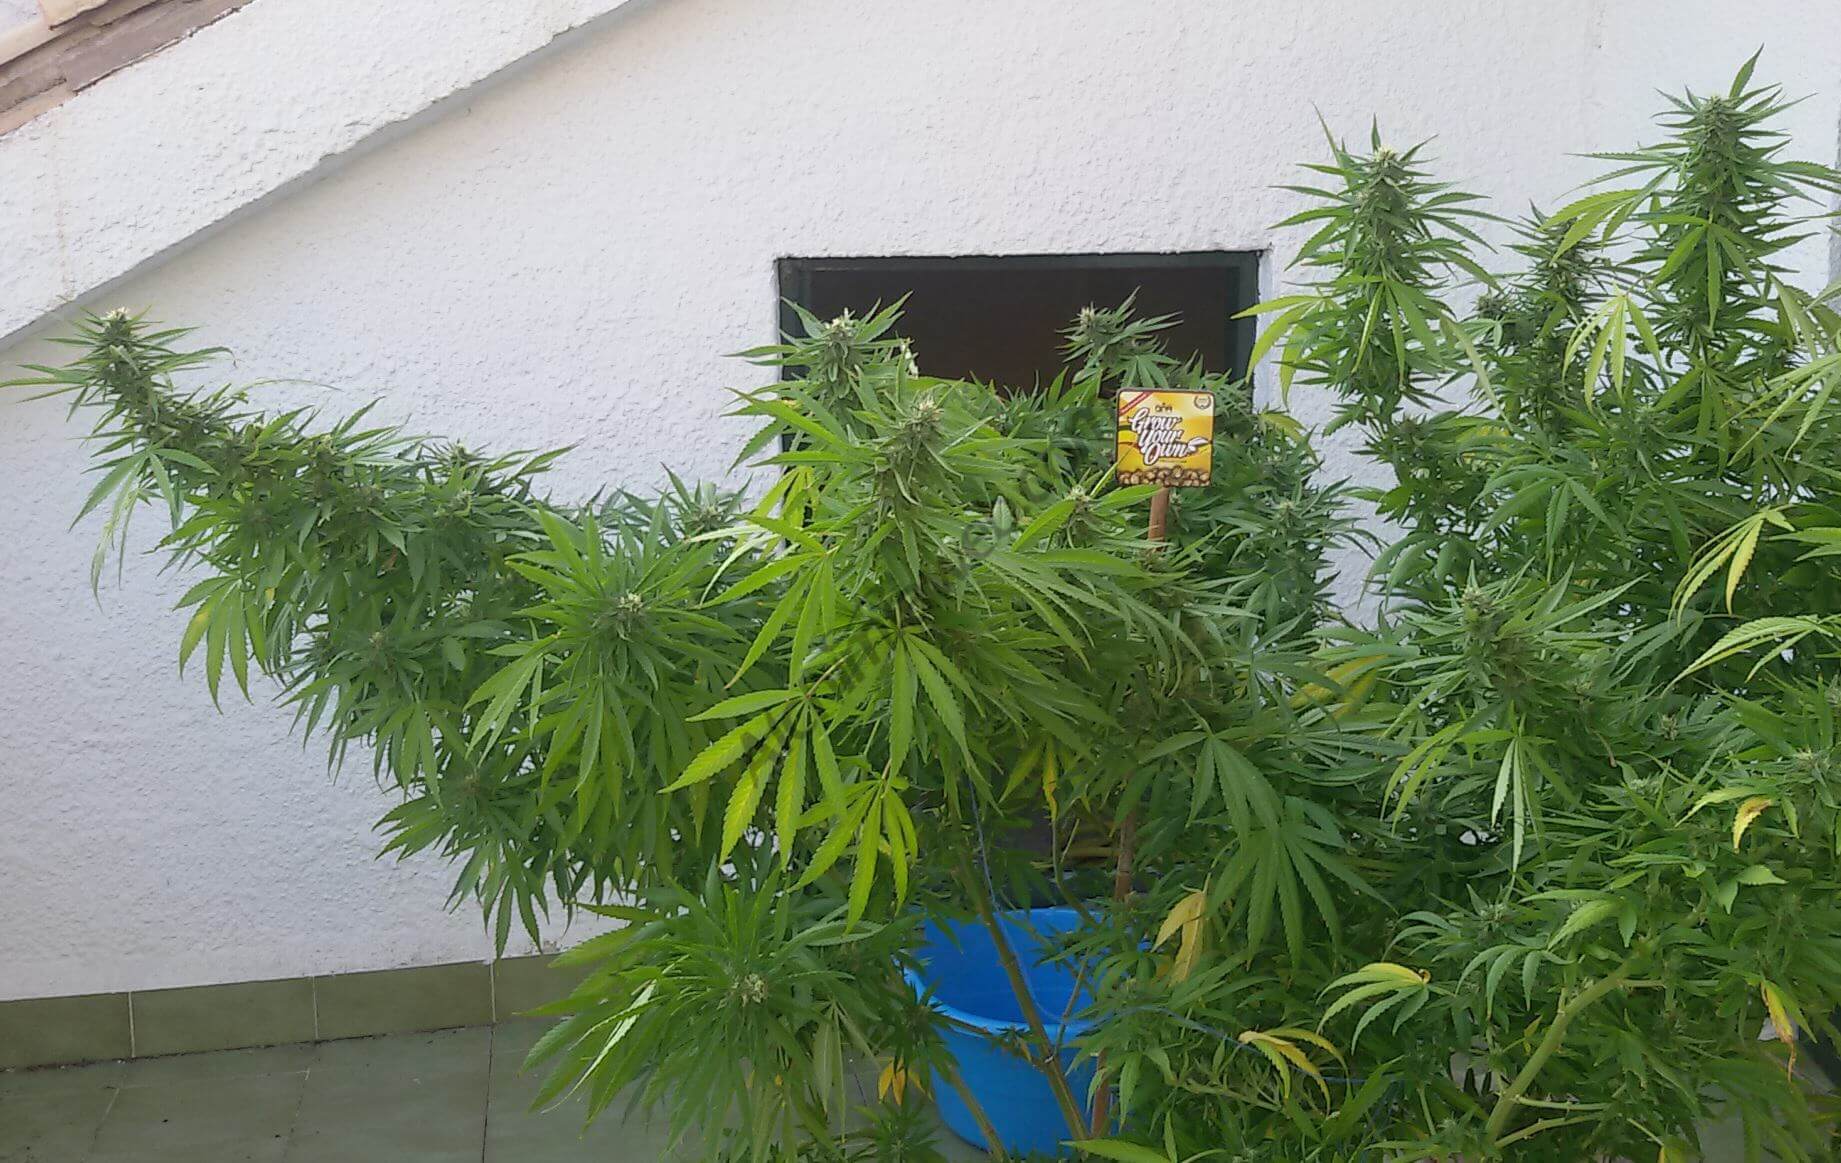 Plante de cannabis cultivée sur le plan horizontal